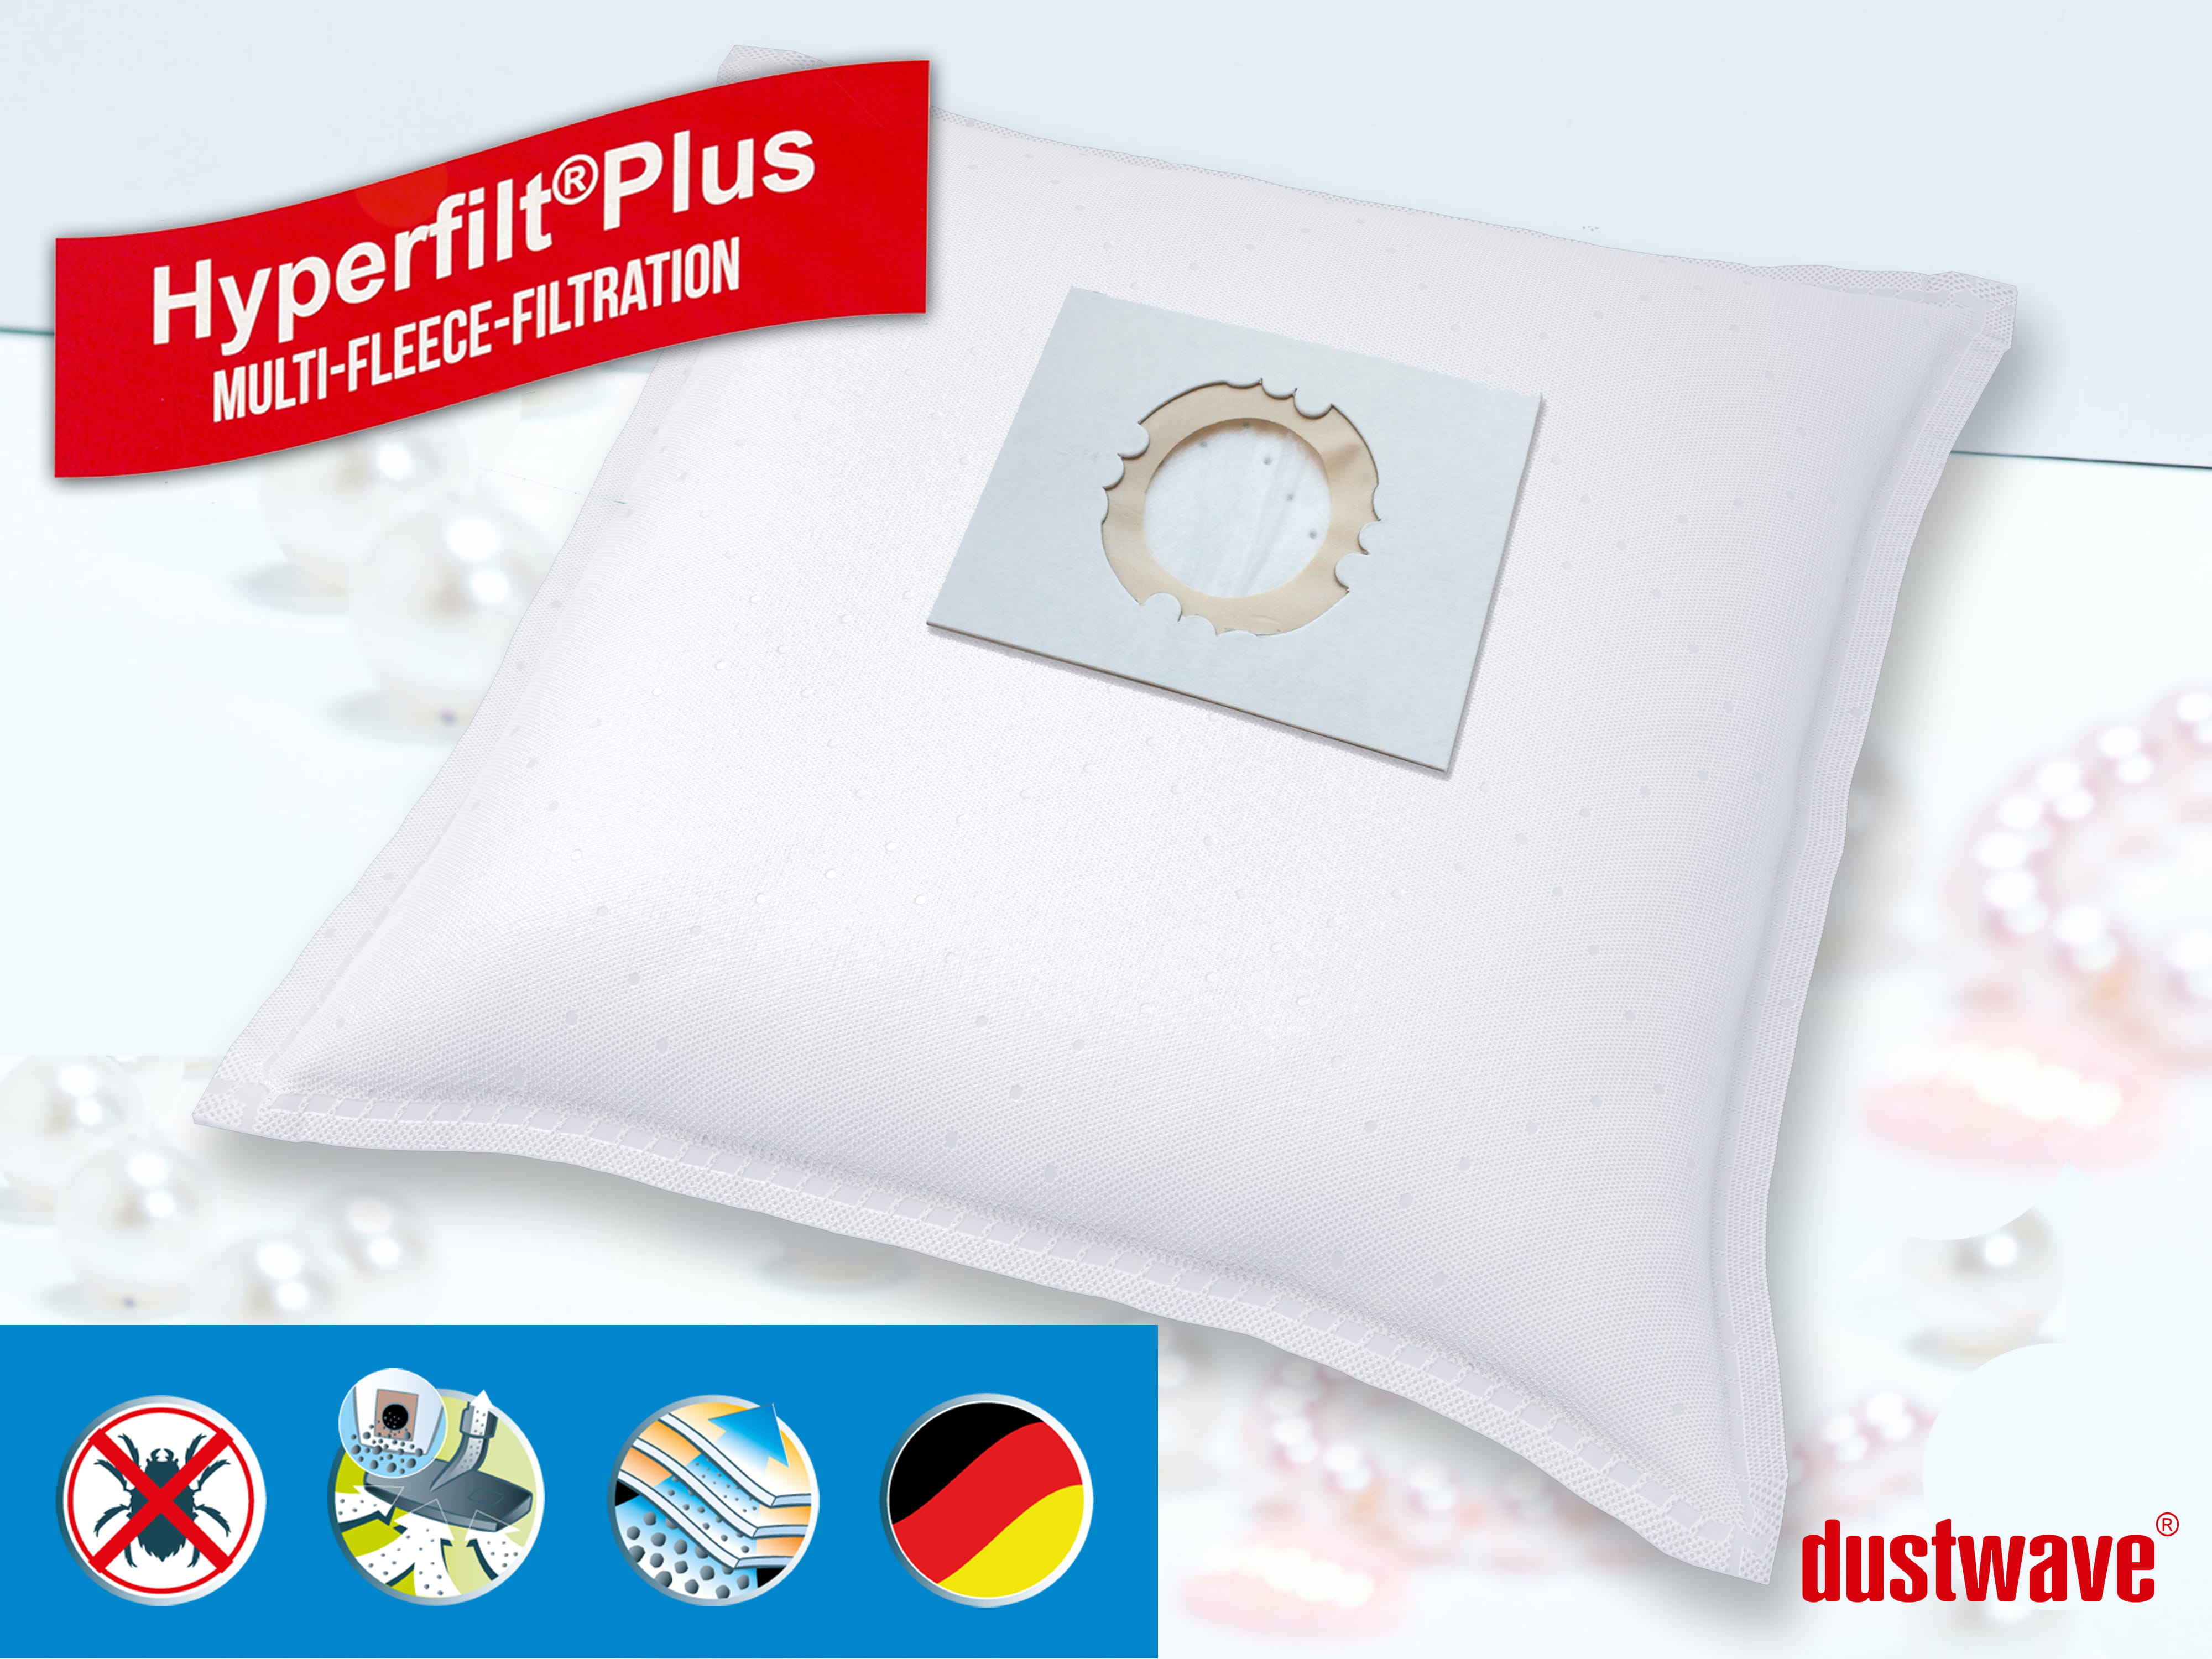 Dustwave® 40 Staubsaugerbeutel für AEG Multi 300 - hocheffizient, mehrlagiges Mikrovlies mit Hygieneverschluss - Made in Germany